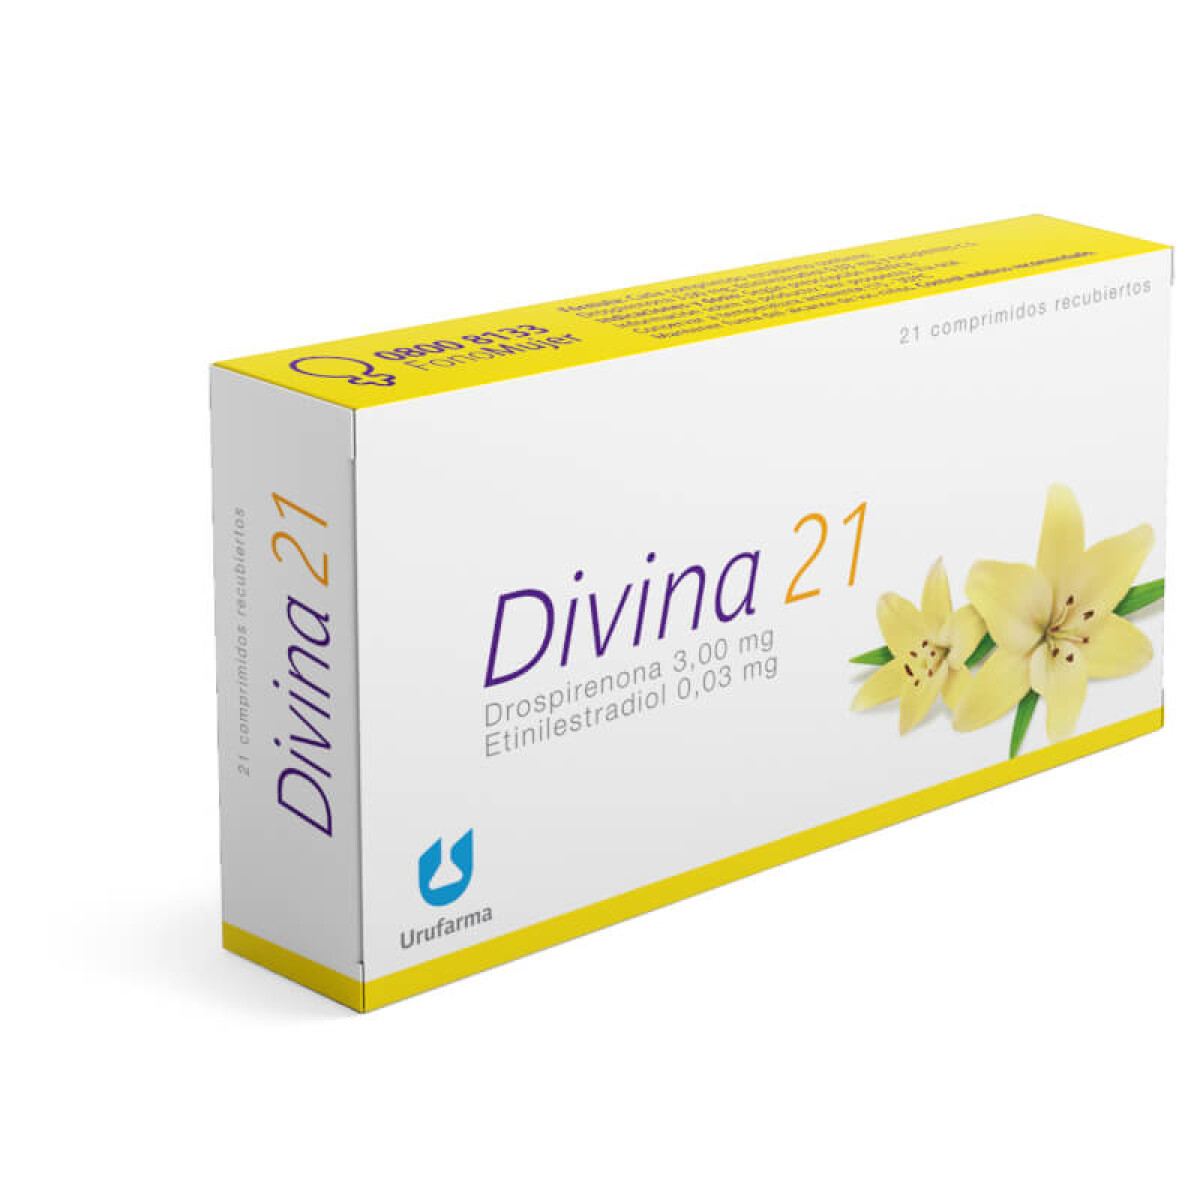 Anticonceptivas Divina - 21 comprimidos 